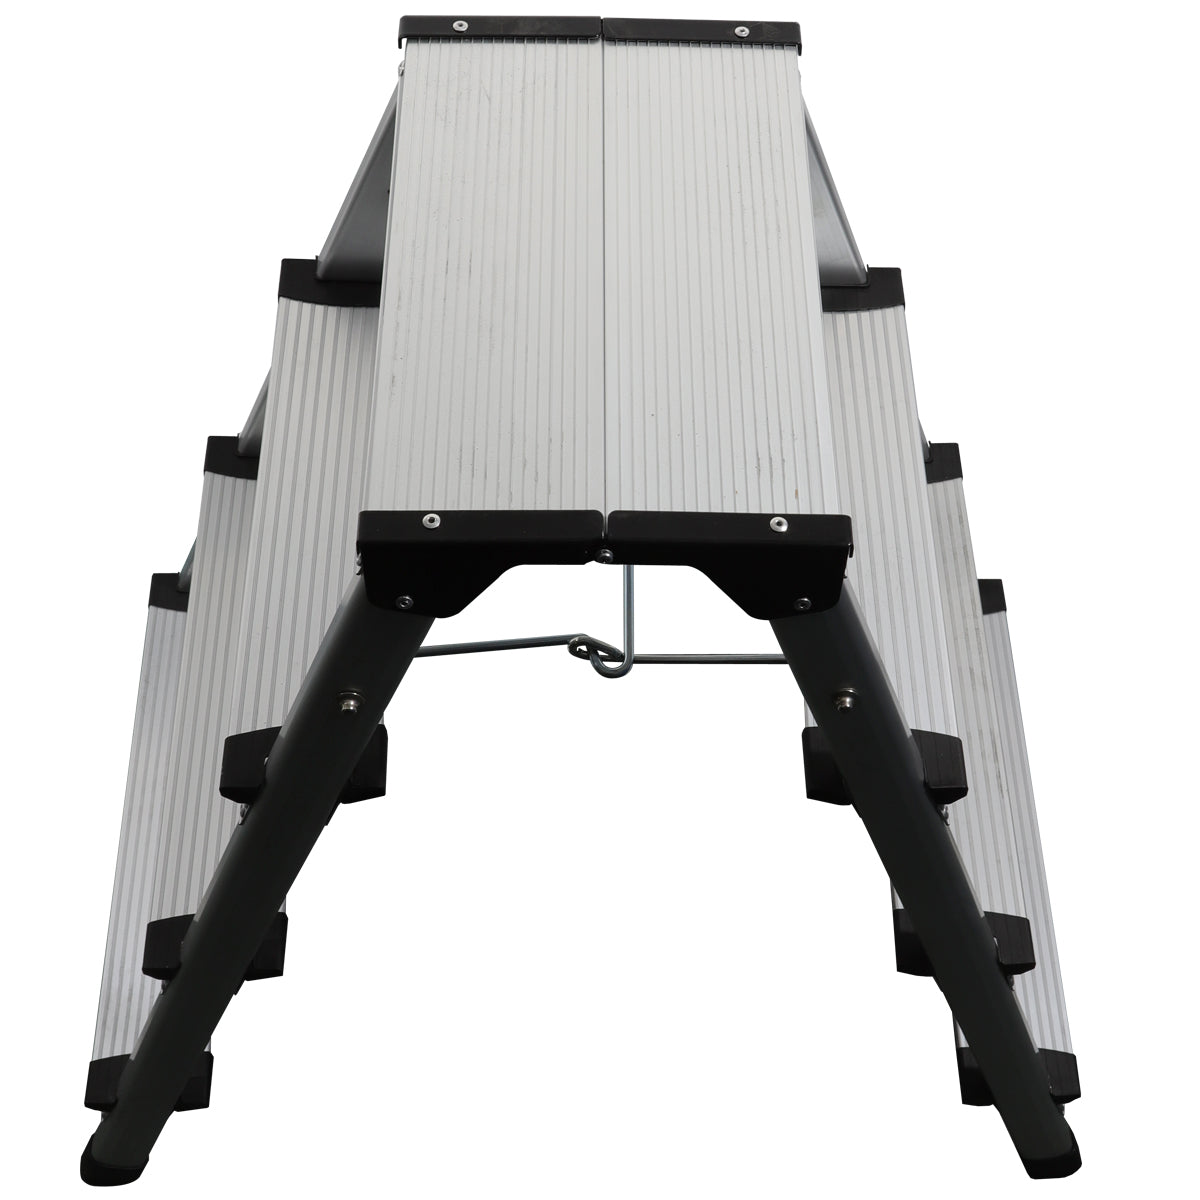 Excel Aluminium Stool Ladder 4 Tread Heavy Duty Folding Hop Up 745mm x 465mm